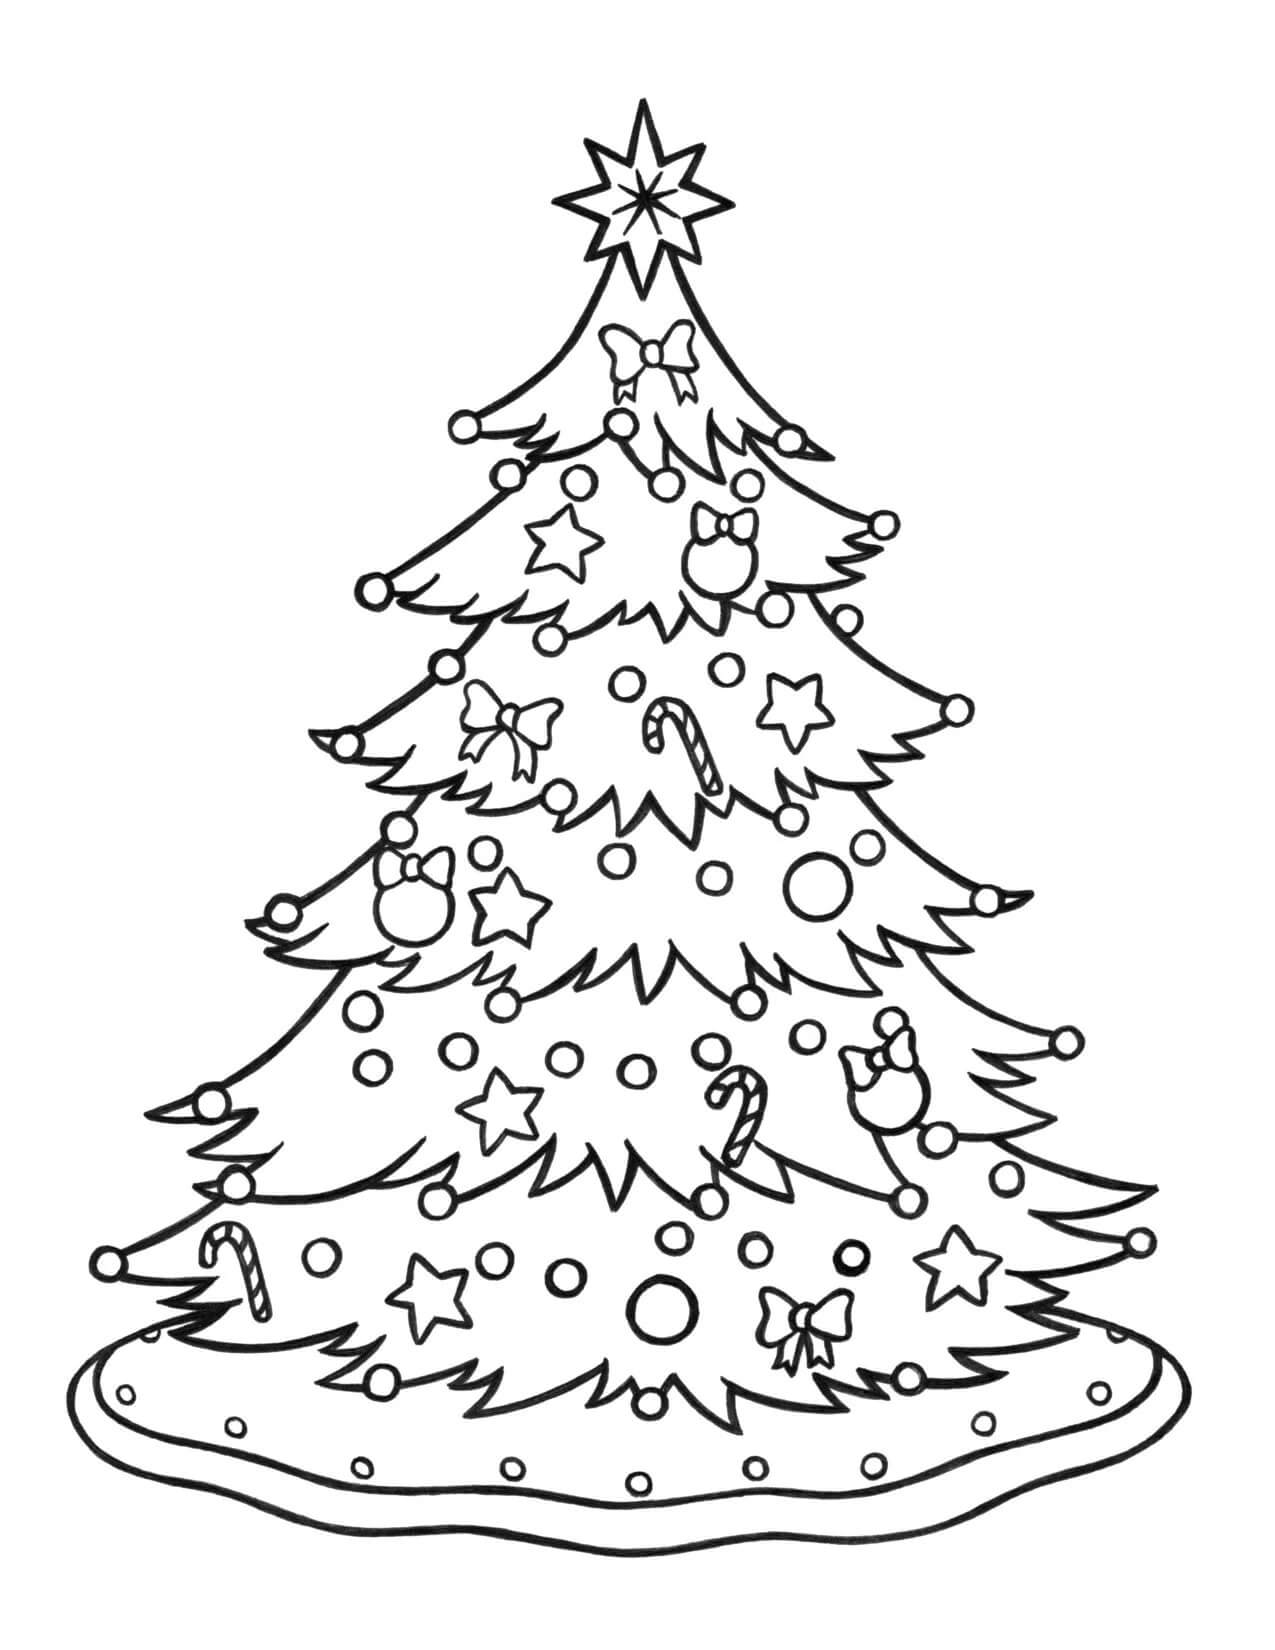 Grande Árvore de Natal com Caixas de Presente para colorir